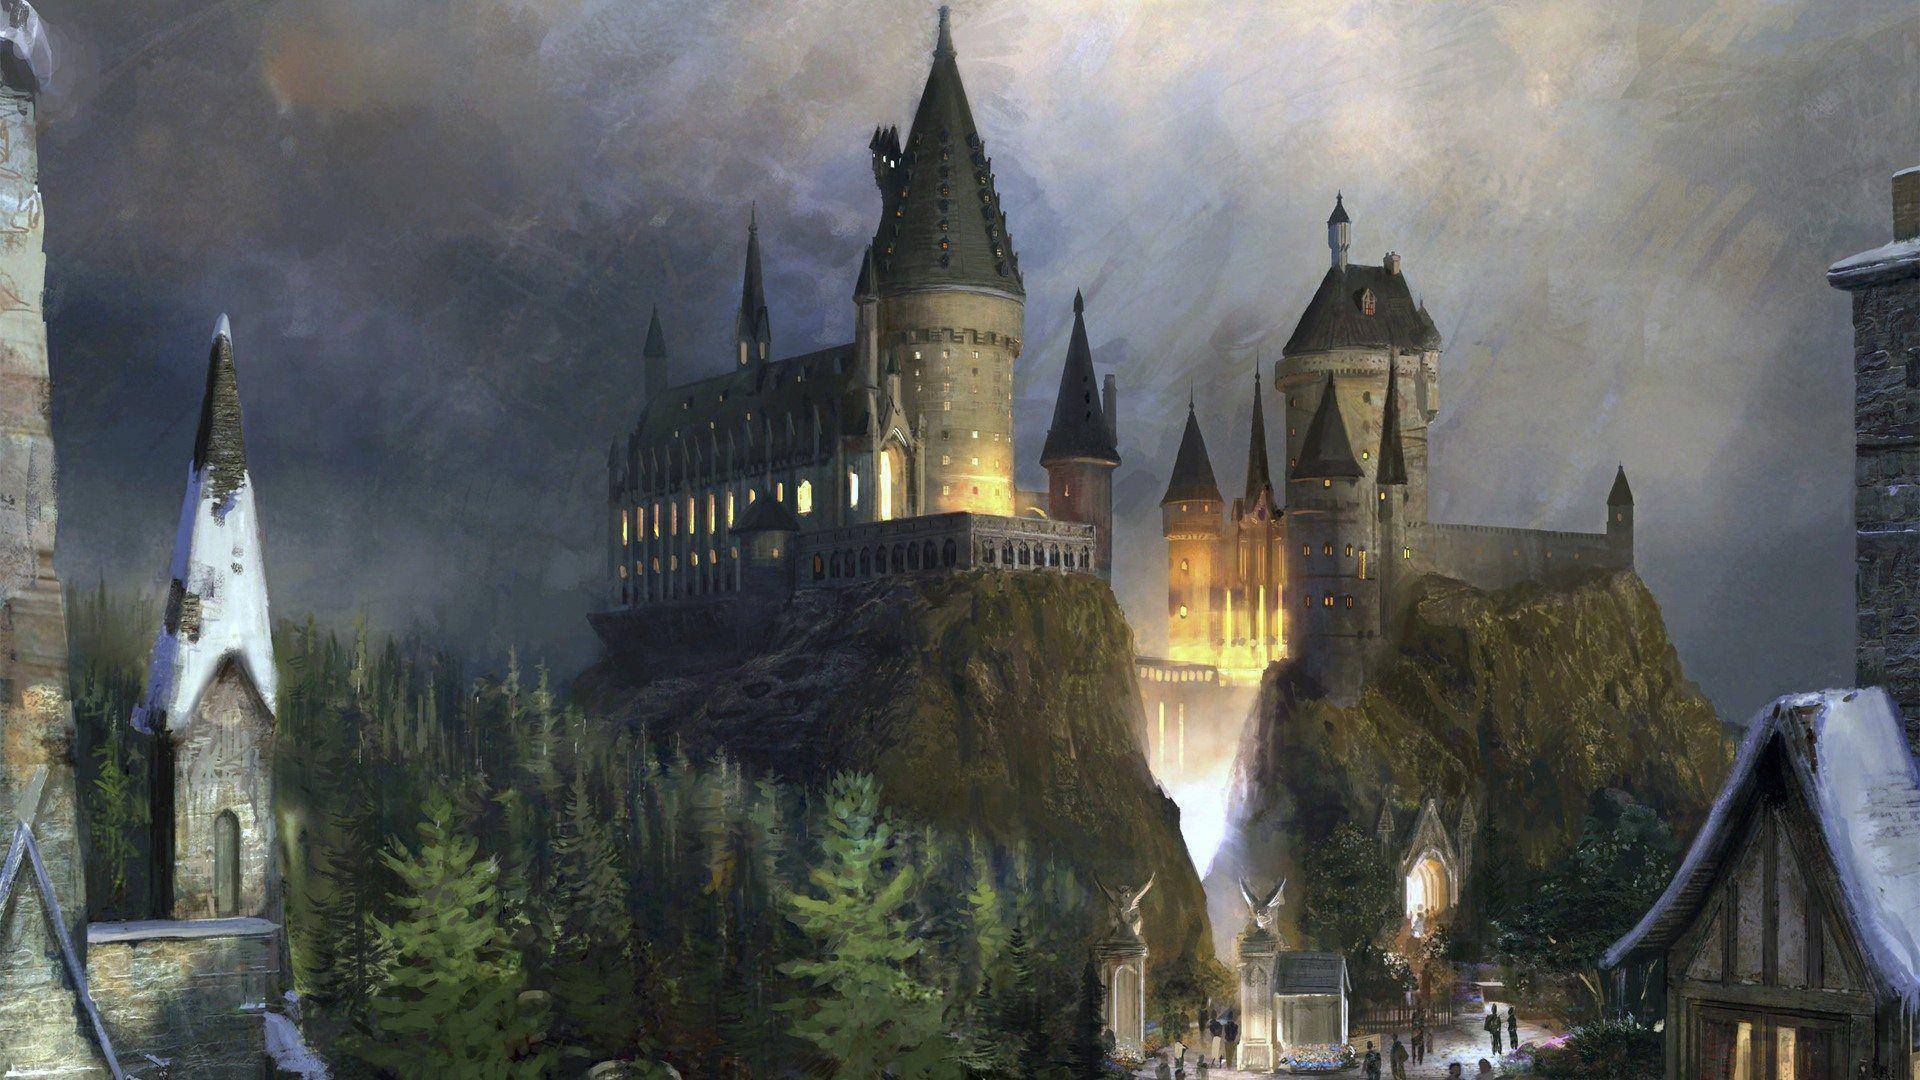 Hogwarts Castle Wallpapers Wallpaper Cave HD Wallpapers Download Free Images Wallpaper [wallpaper981.blogspot.com]